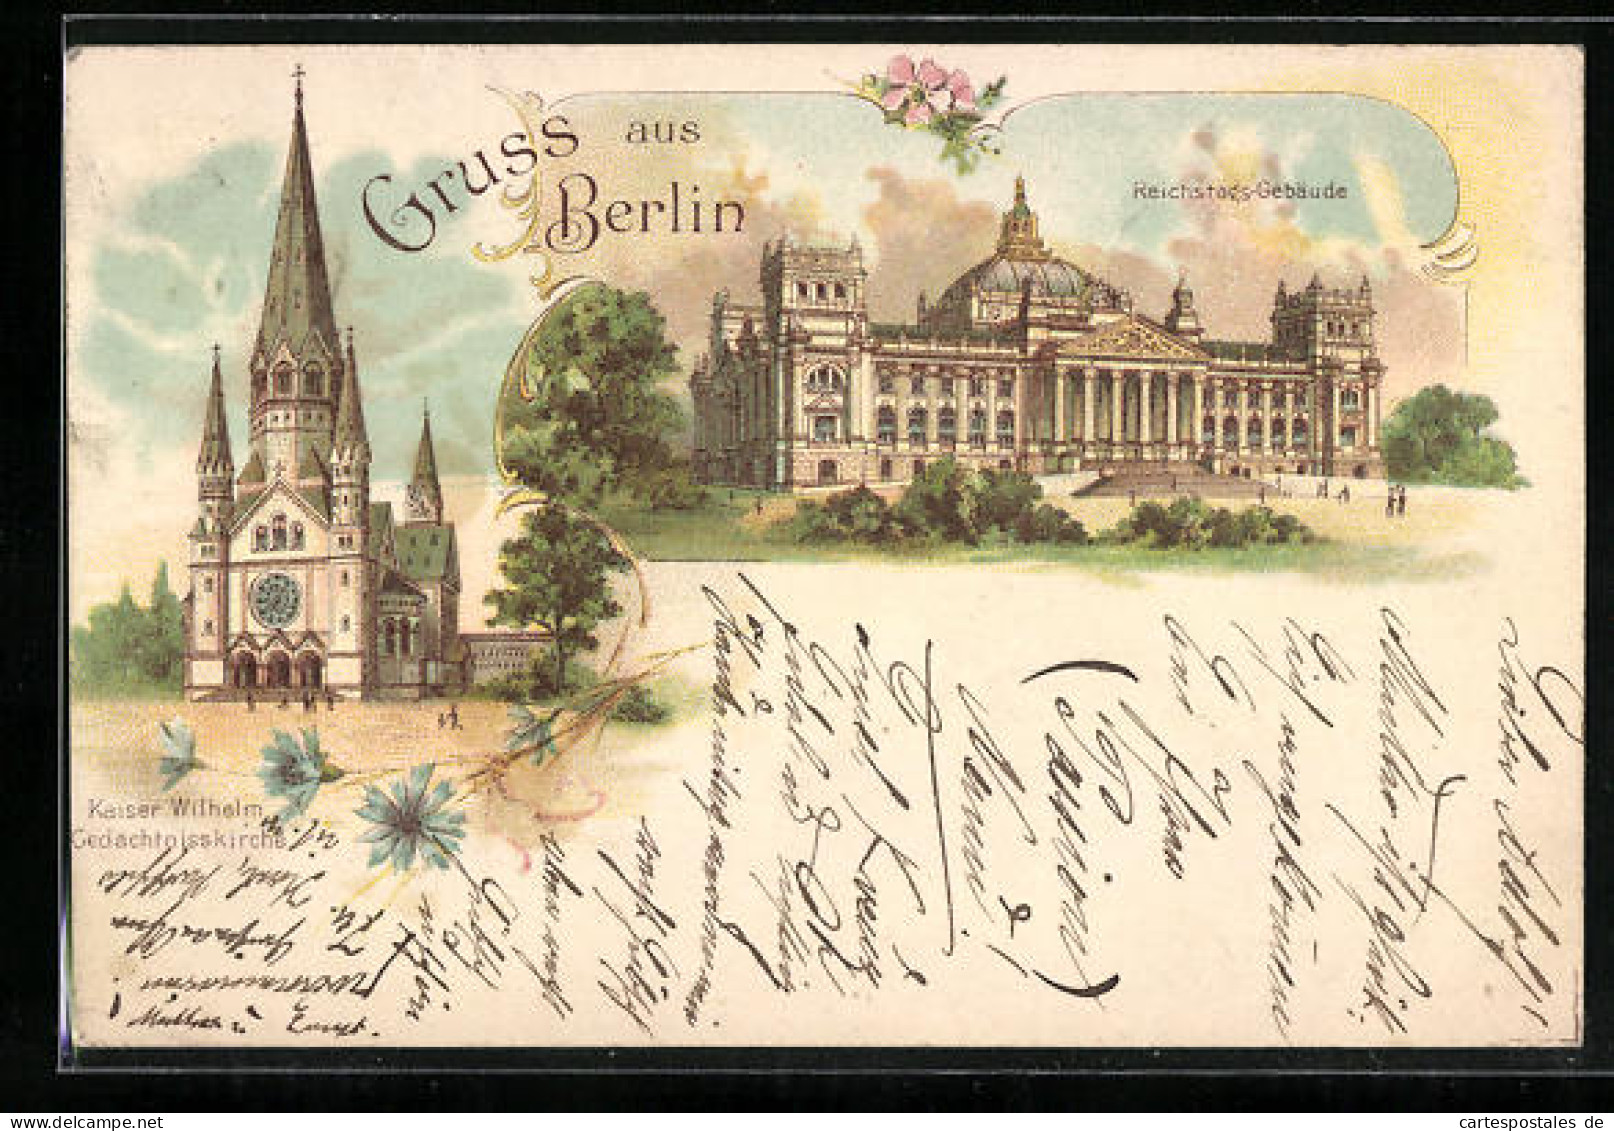 Lithographie Berlin-Tiergarten, Reichstags-Gebäude, Kaiser Wilhelm Gedächtnisskirch  - Tiergarten